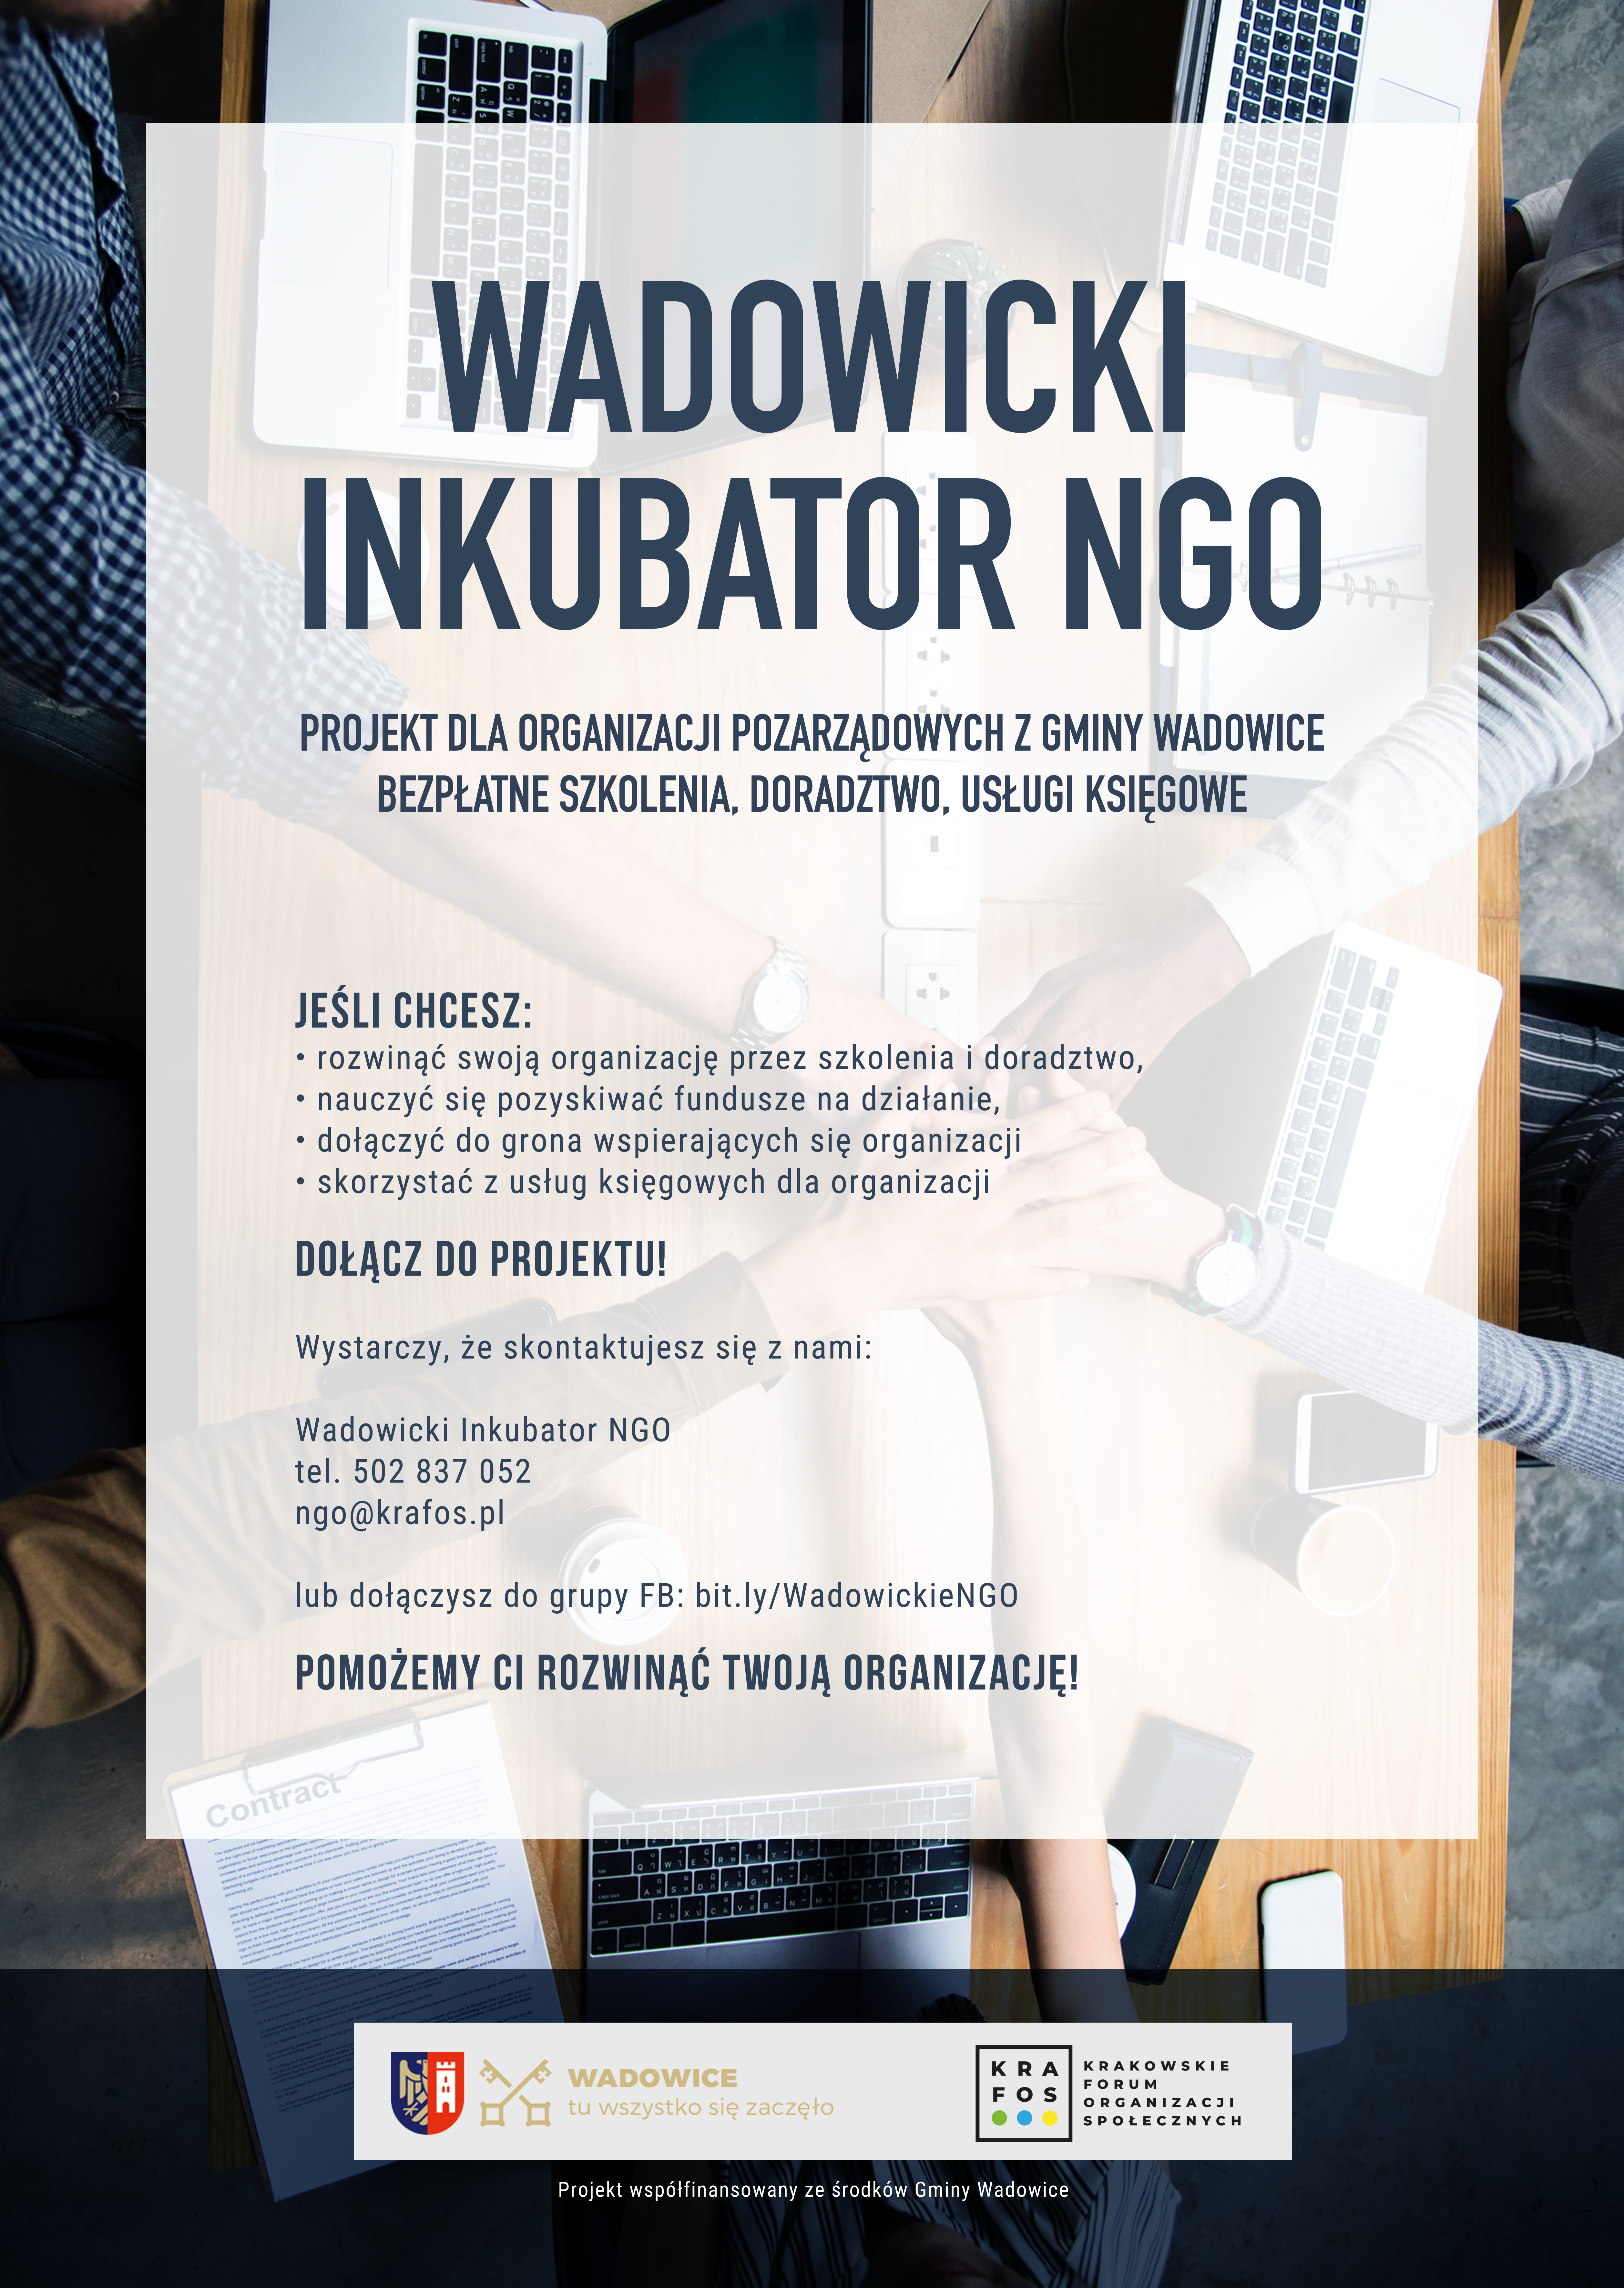 Wadowicki Inkubator NGO plakat - Bezpłatna pomoc dla Organizacji Pozarządowych z Gminy Wadowice